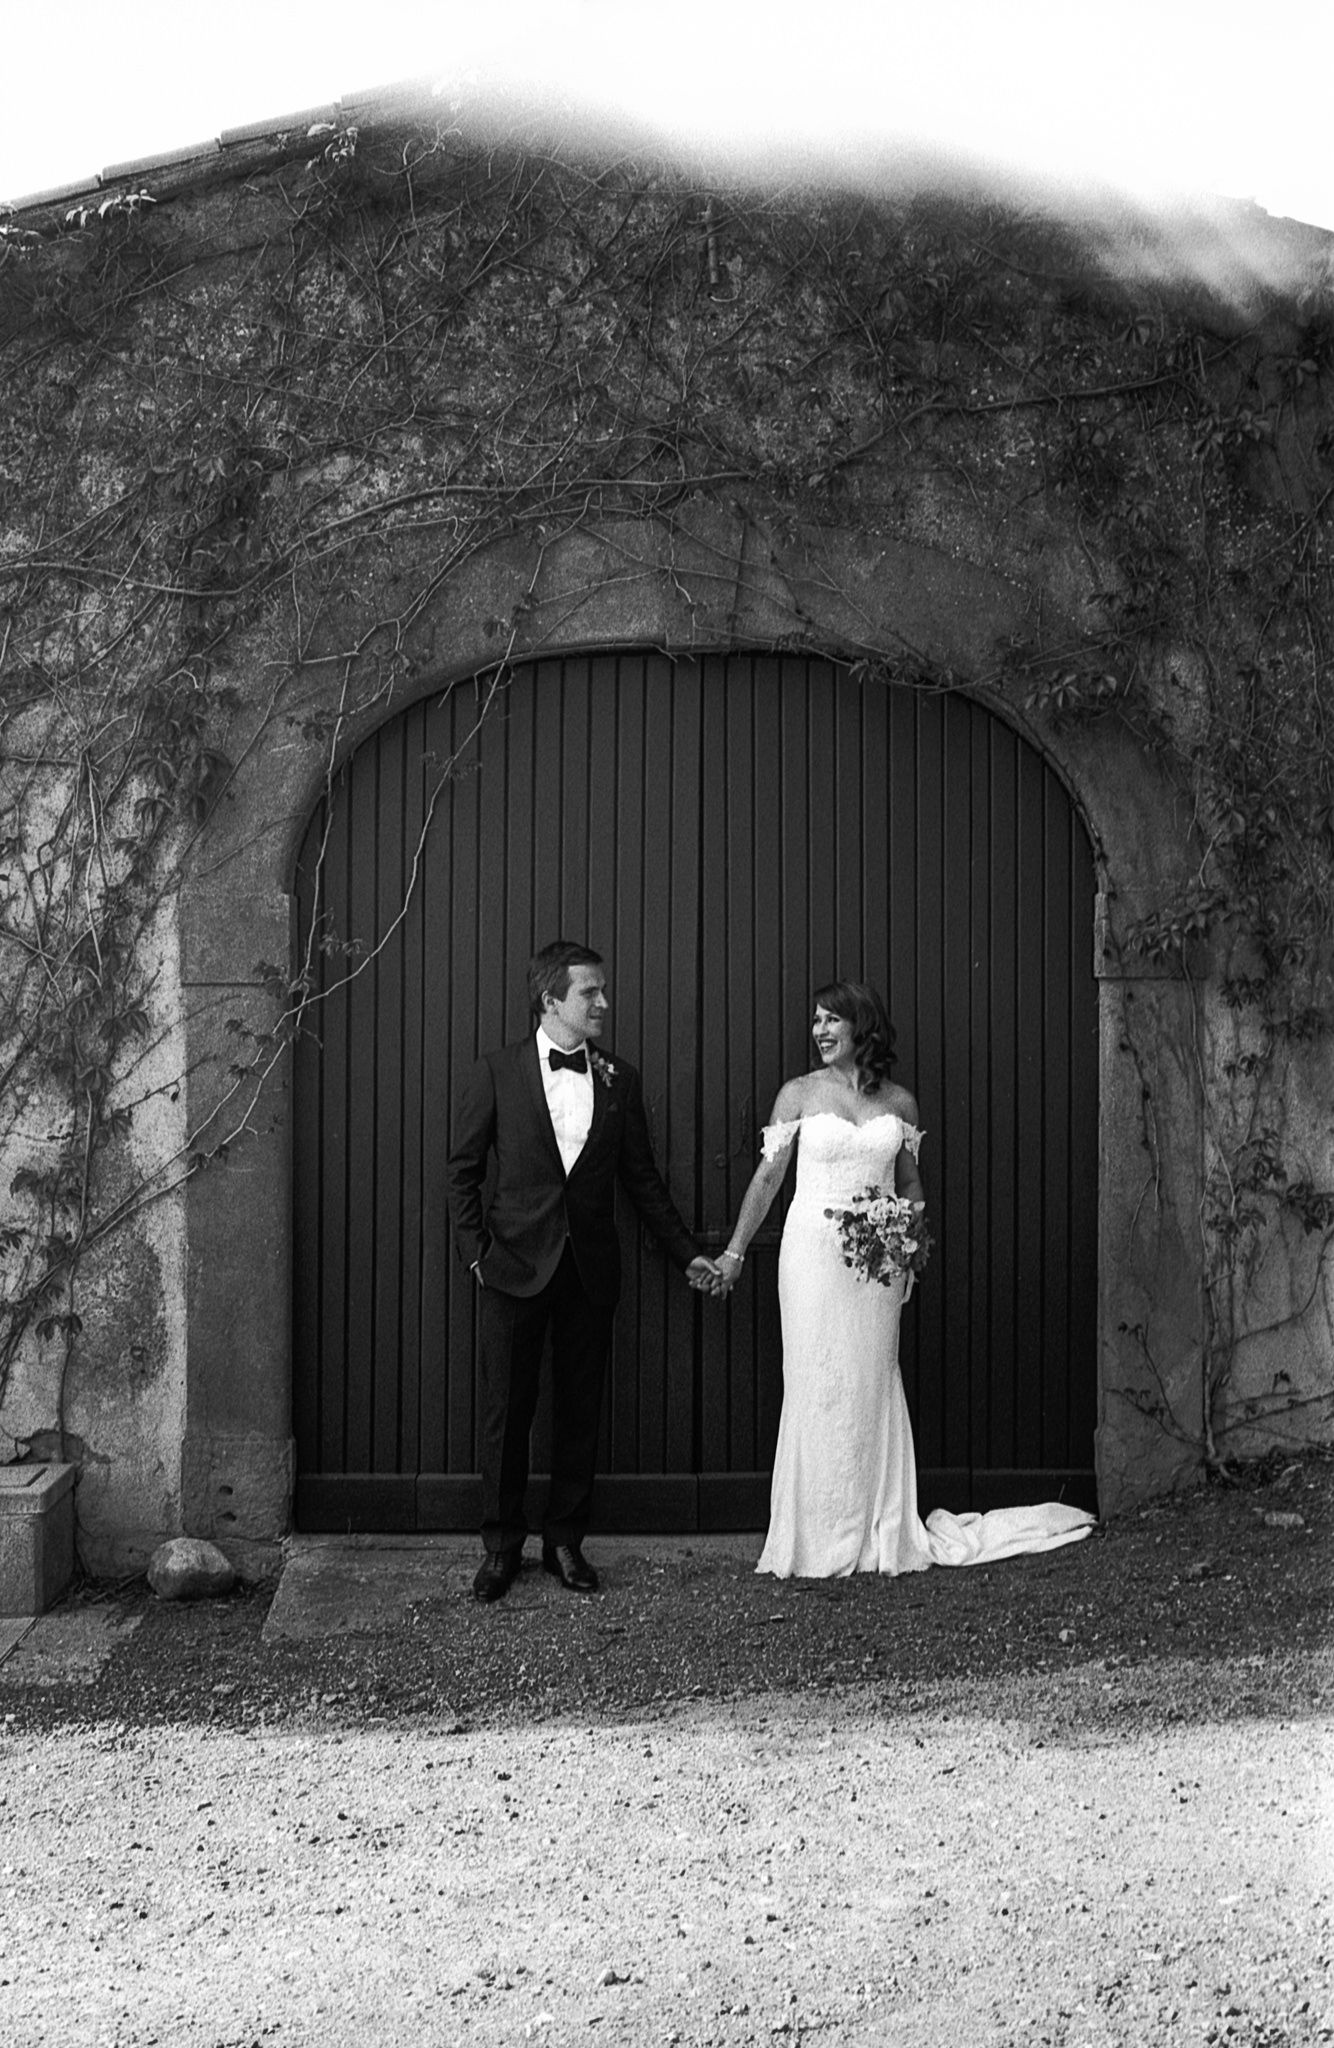 Tuscany Wedding - Leica M2 - ILFORD FP4 - 35mm Gallery 01